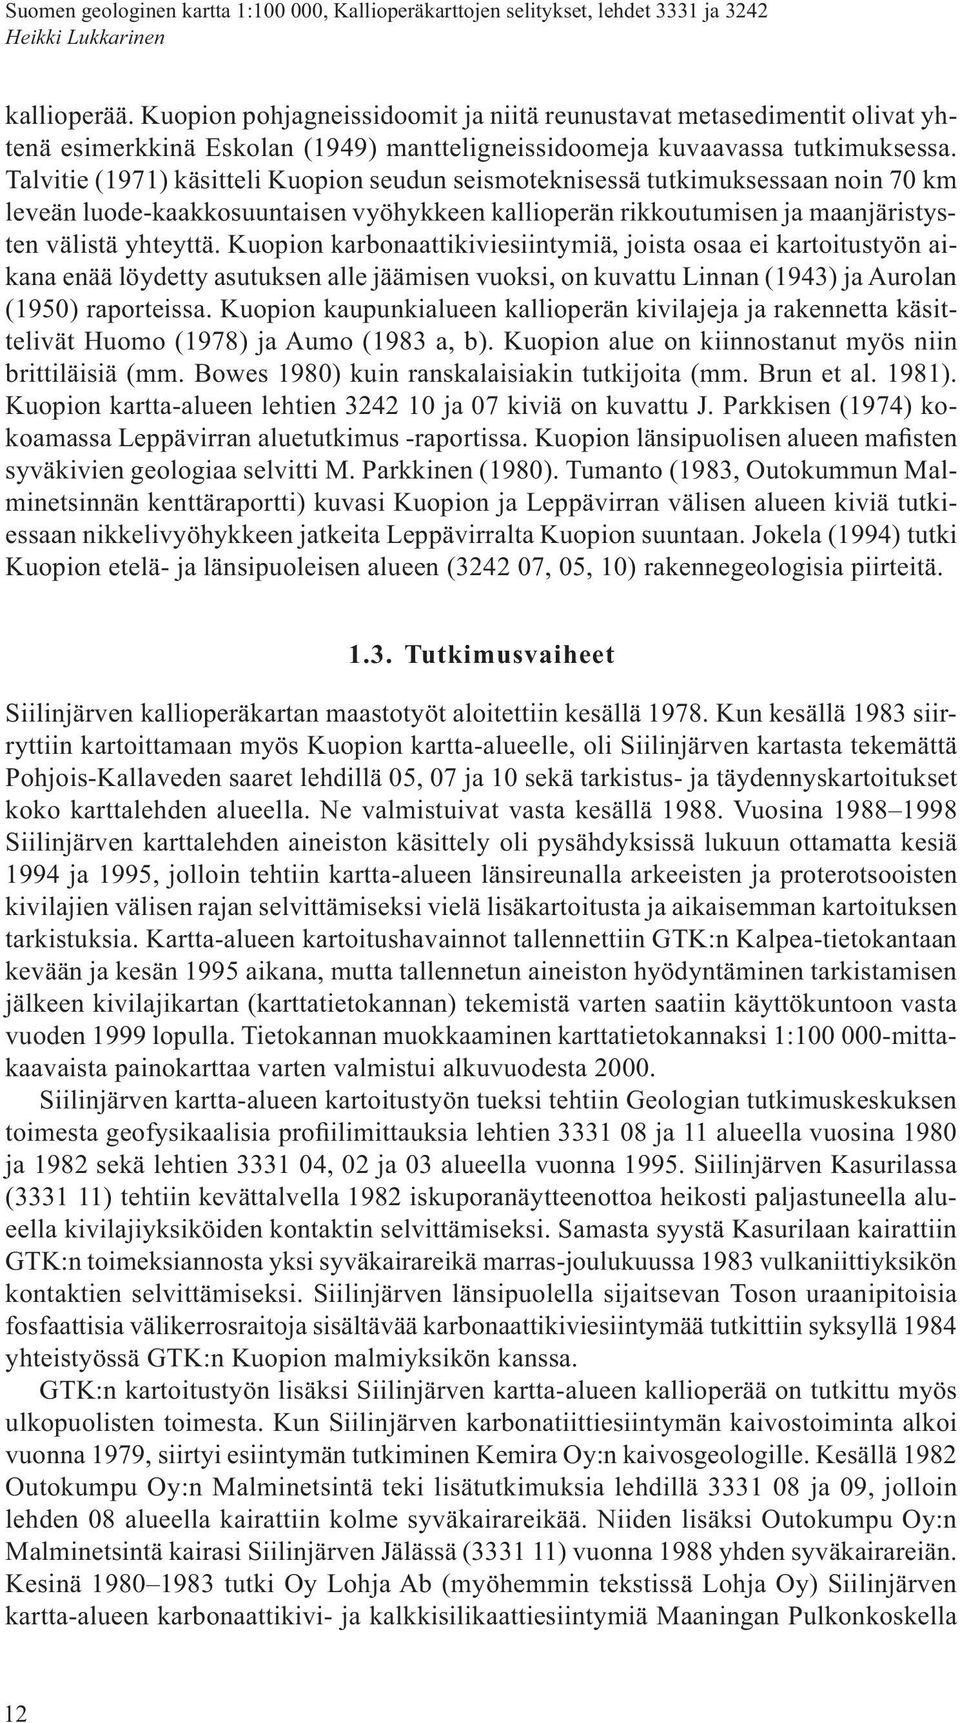 Kuopion karbonaattikiviesiintymiä, joista osaa ei kartoitustyön aikana enää löydetty asutuksen alle jäämisen vuoksi, on kuvattu Linnan (1943) ja Aurolan (1950) raporteissa.